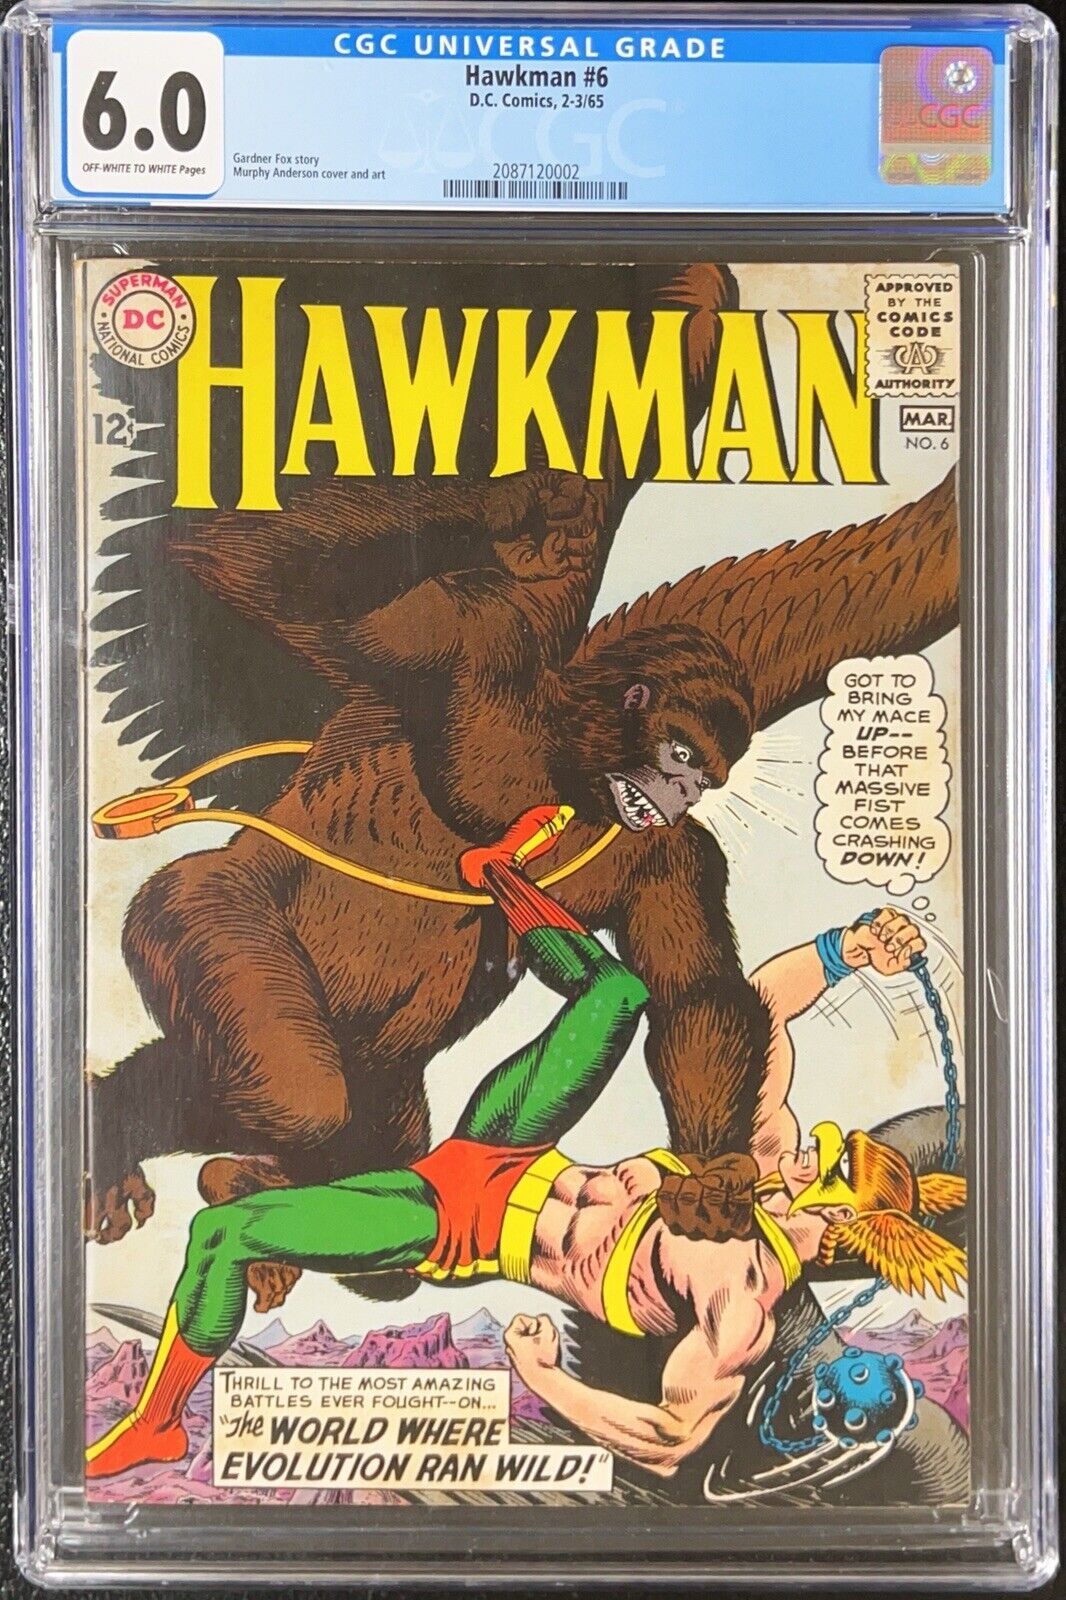 Hawkman # 6 CGC 6.0 -- 1965 -- Flying Gorilla cover.